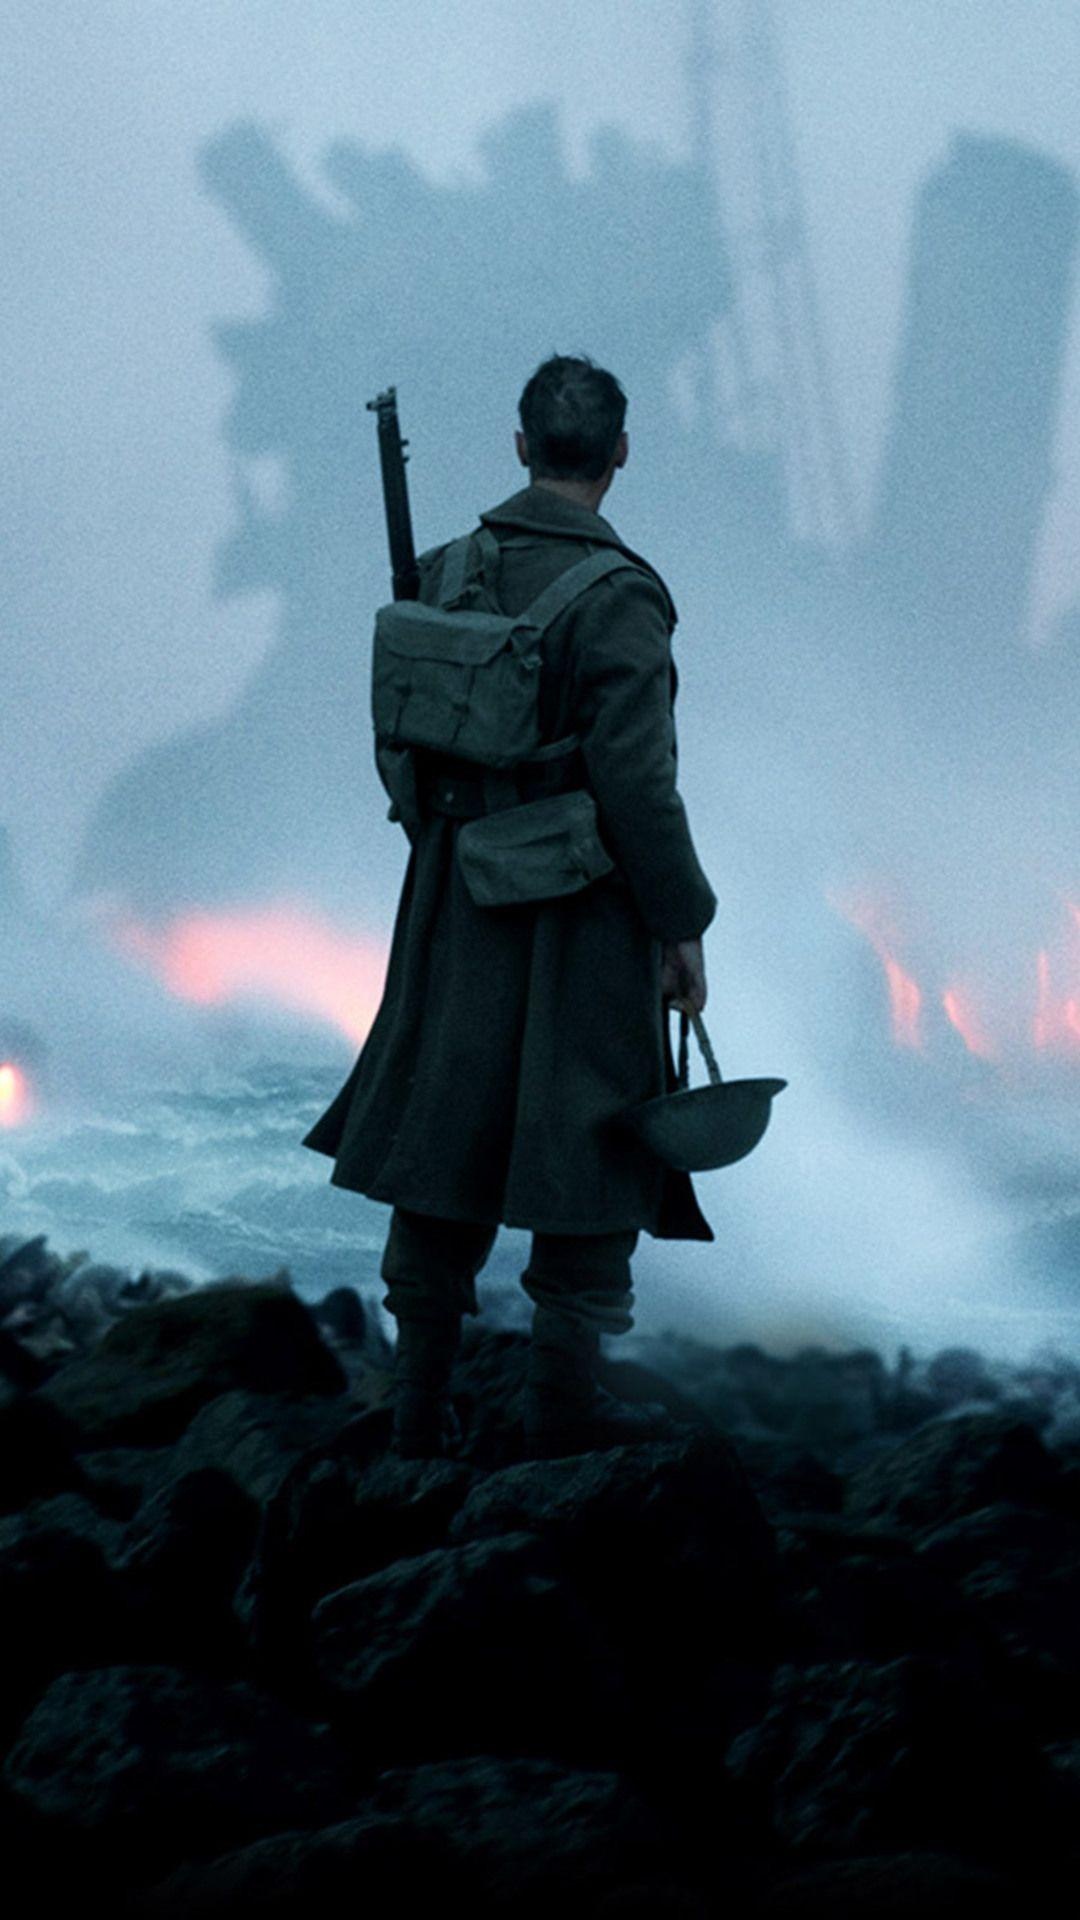 Dunkirk 2017, War film, Intense action, Christopher Nolan, 1080x1920 Full HD Handy